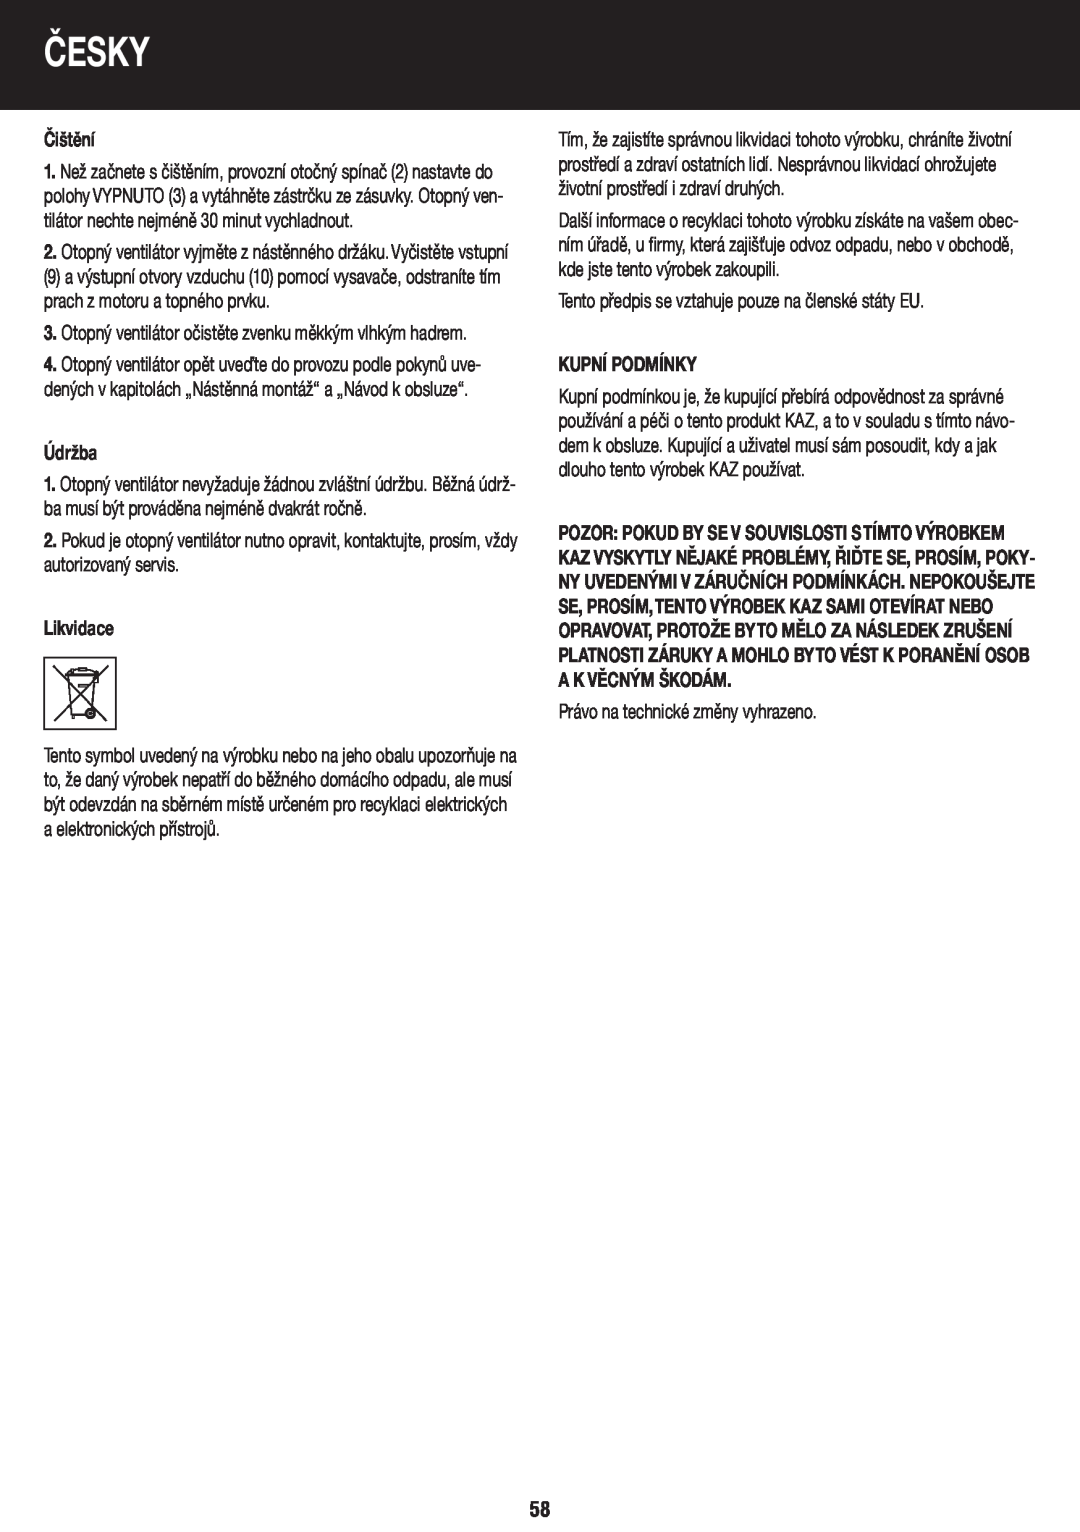 Honeywell BH-777FTE manual do utilizador Čištění, Údržba, Likvidace, Kupní Podmínky, Česky 